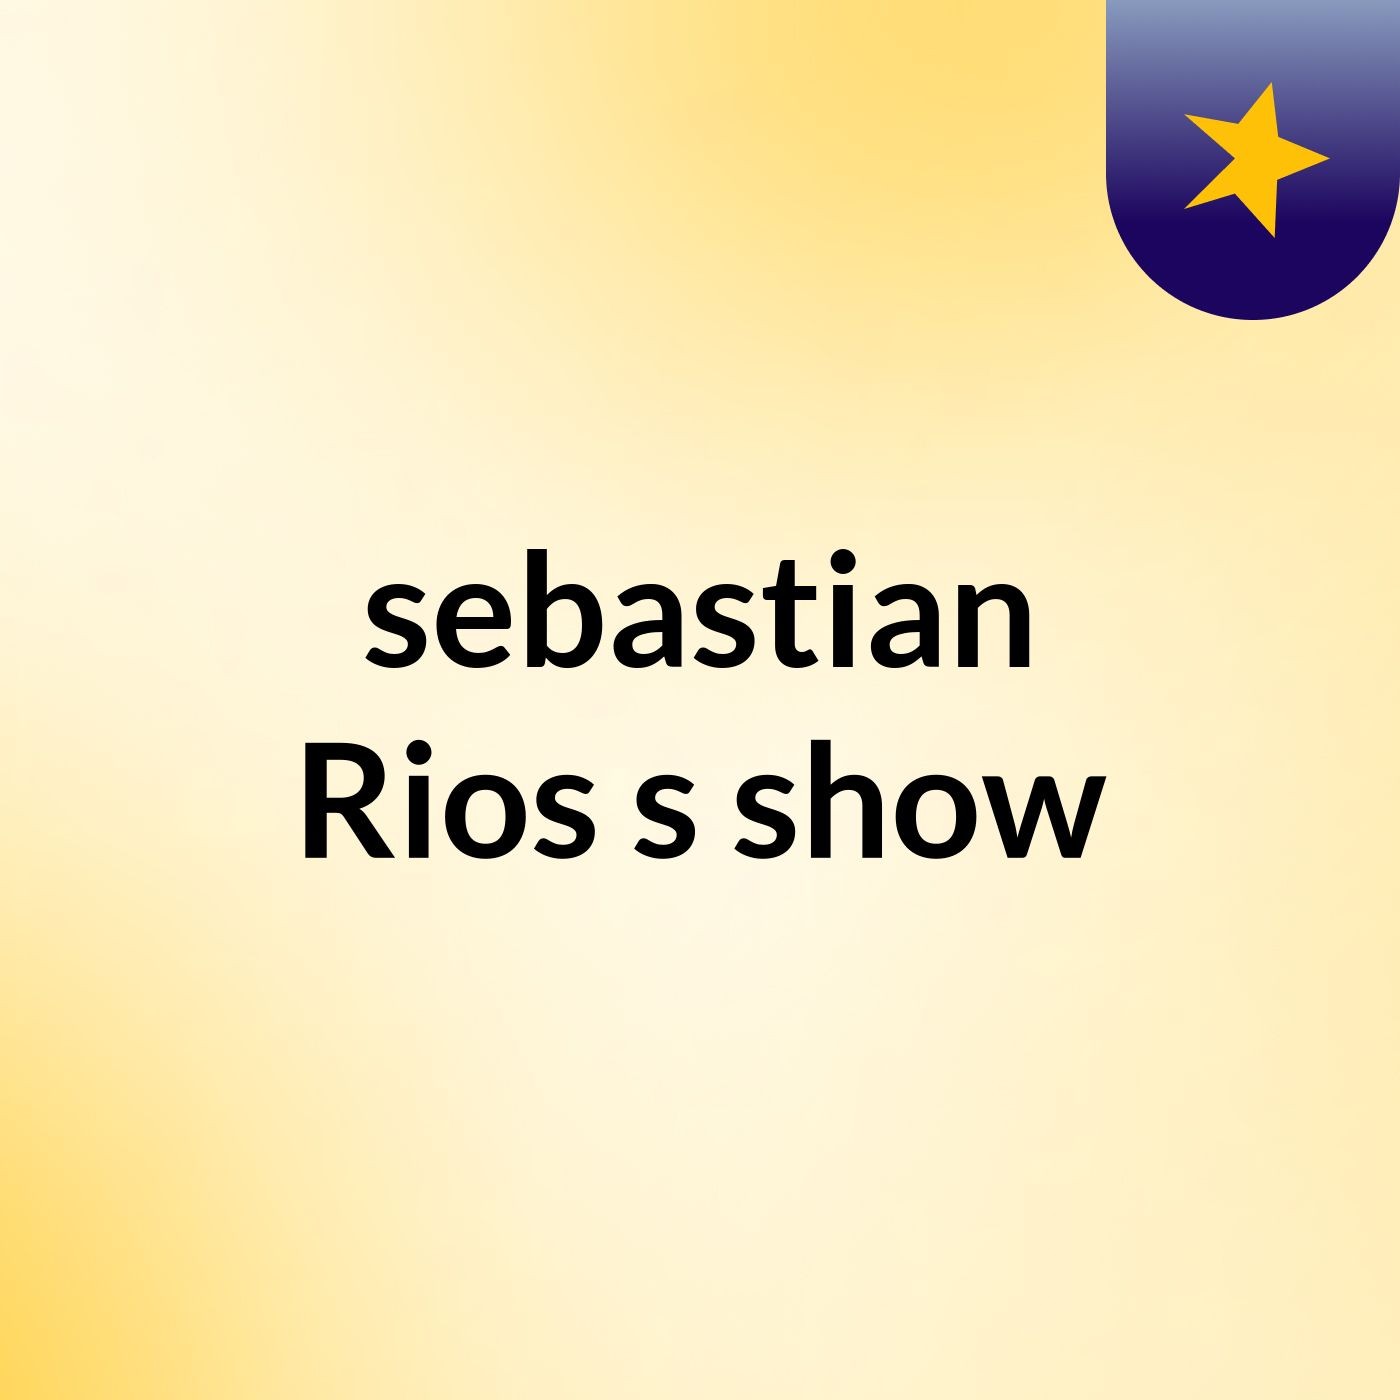 sebastian Rios's show